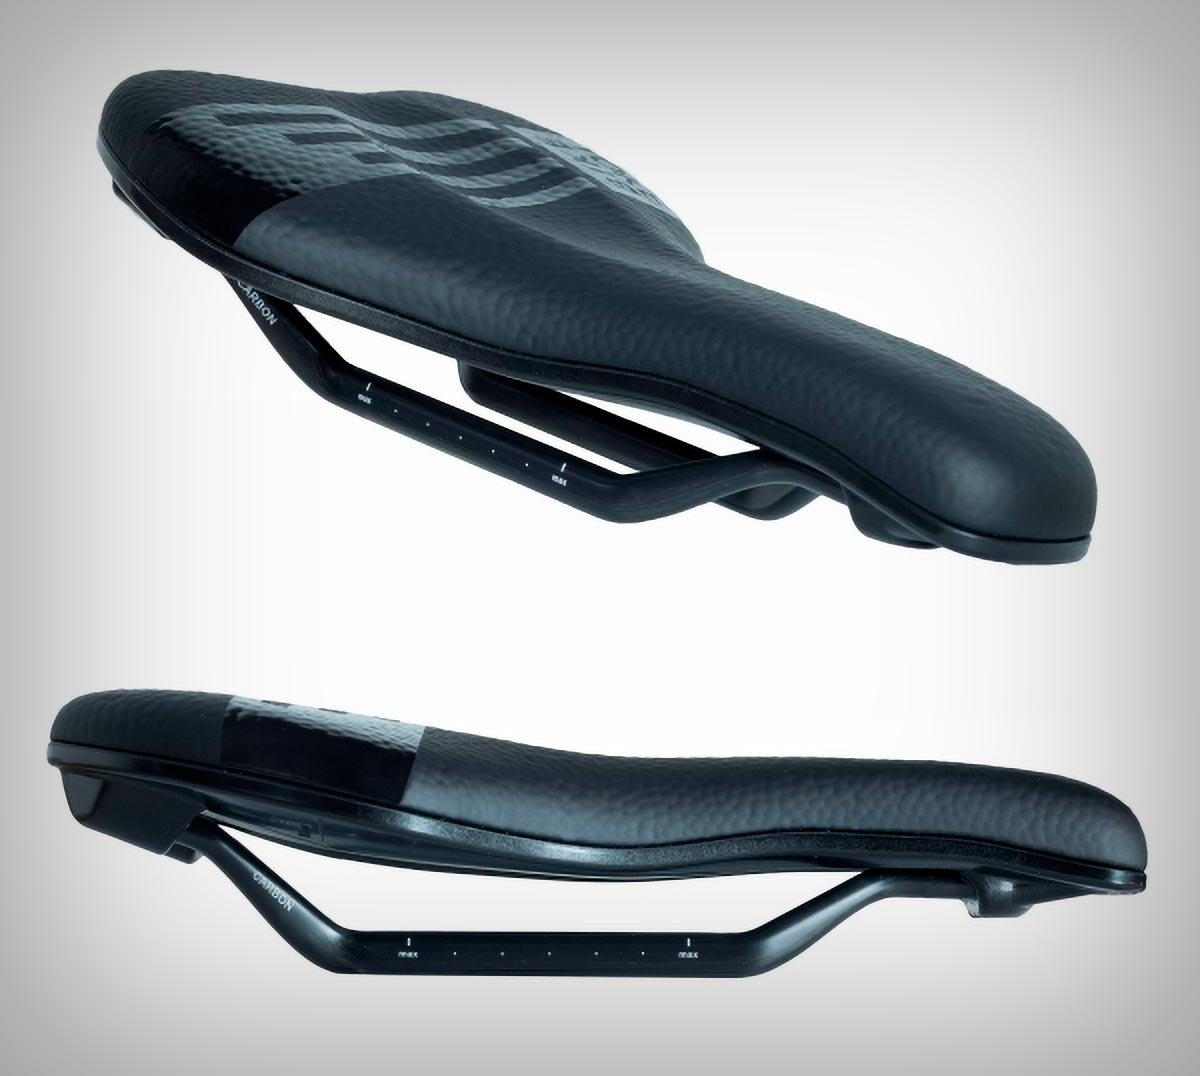 BikeYoke presenta una versión con raíles de carbono para los sillines Sagma y Sagma Lite